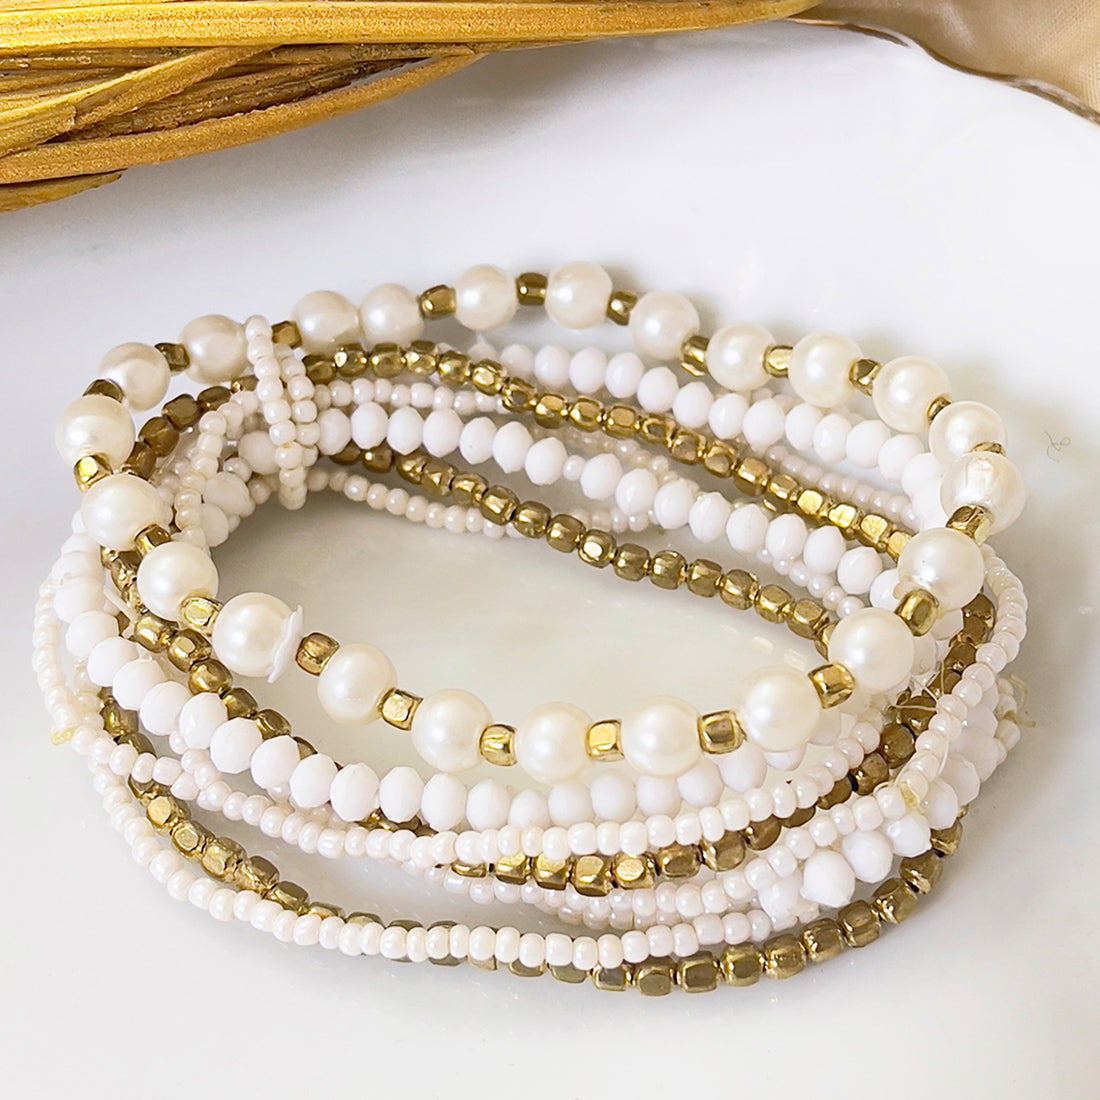 Beaded Gold & White Multilayered Elastic Boho Bracelet